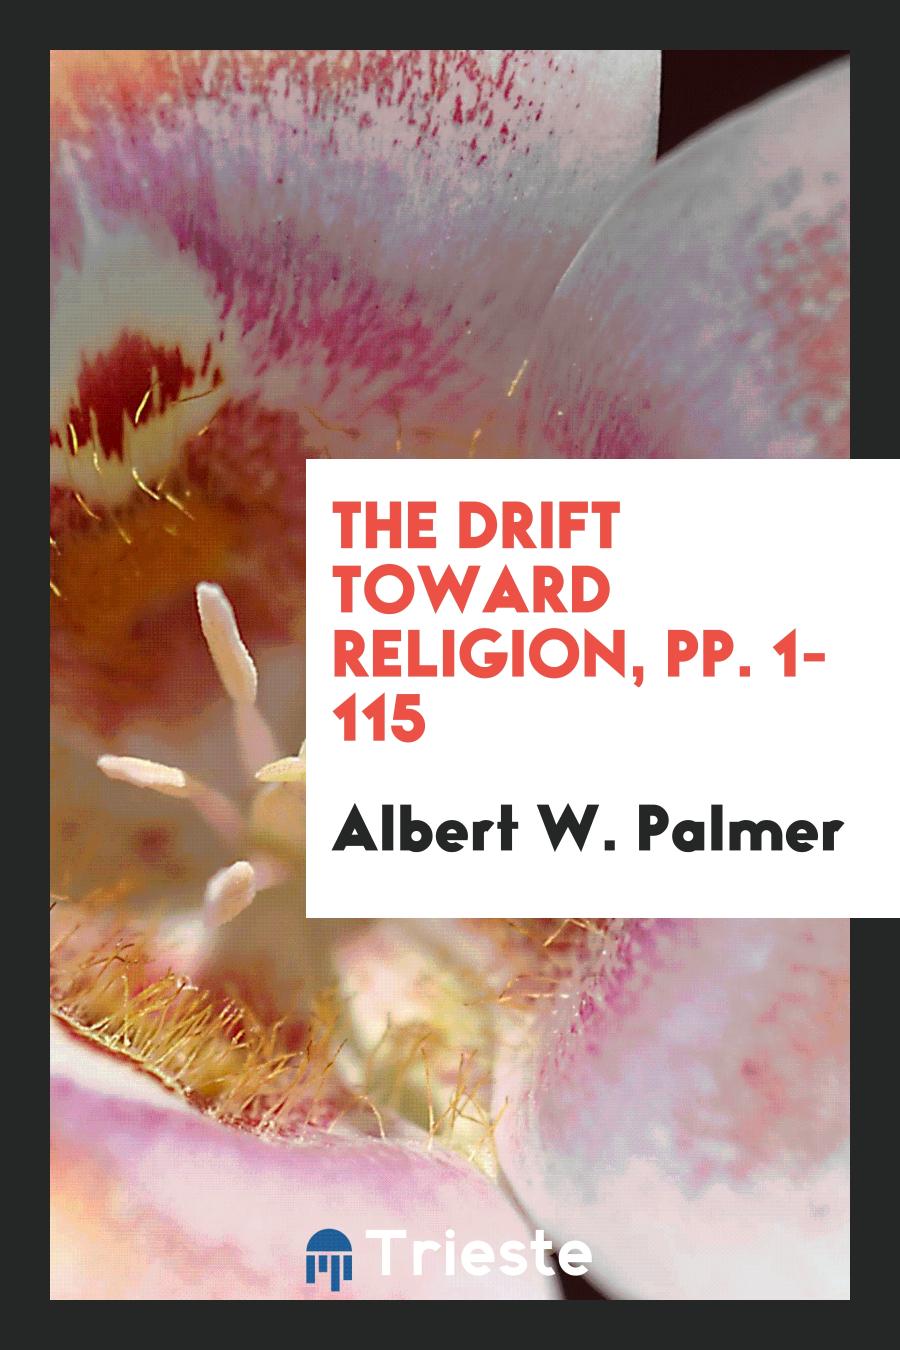 Albert W. Palmer - The Drift Toward Religion, pp. 1-115